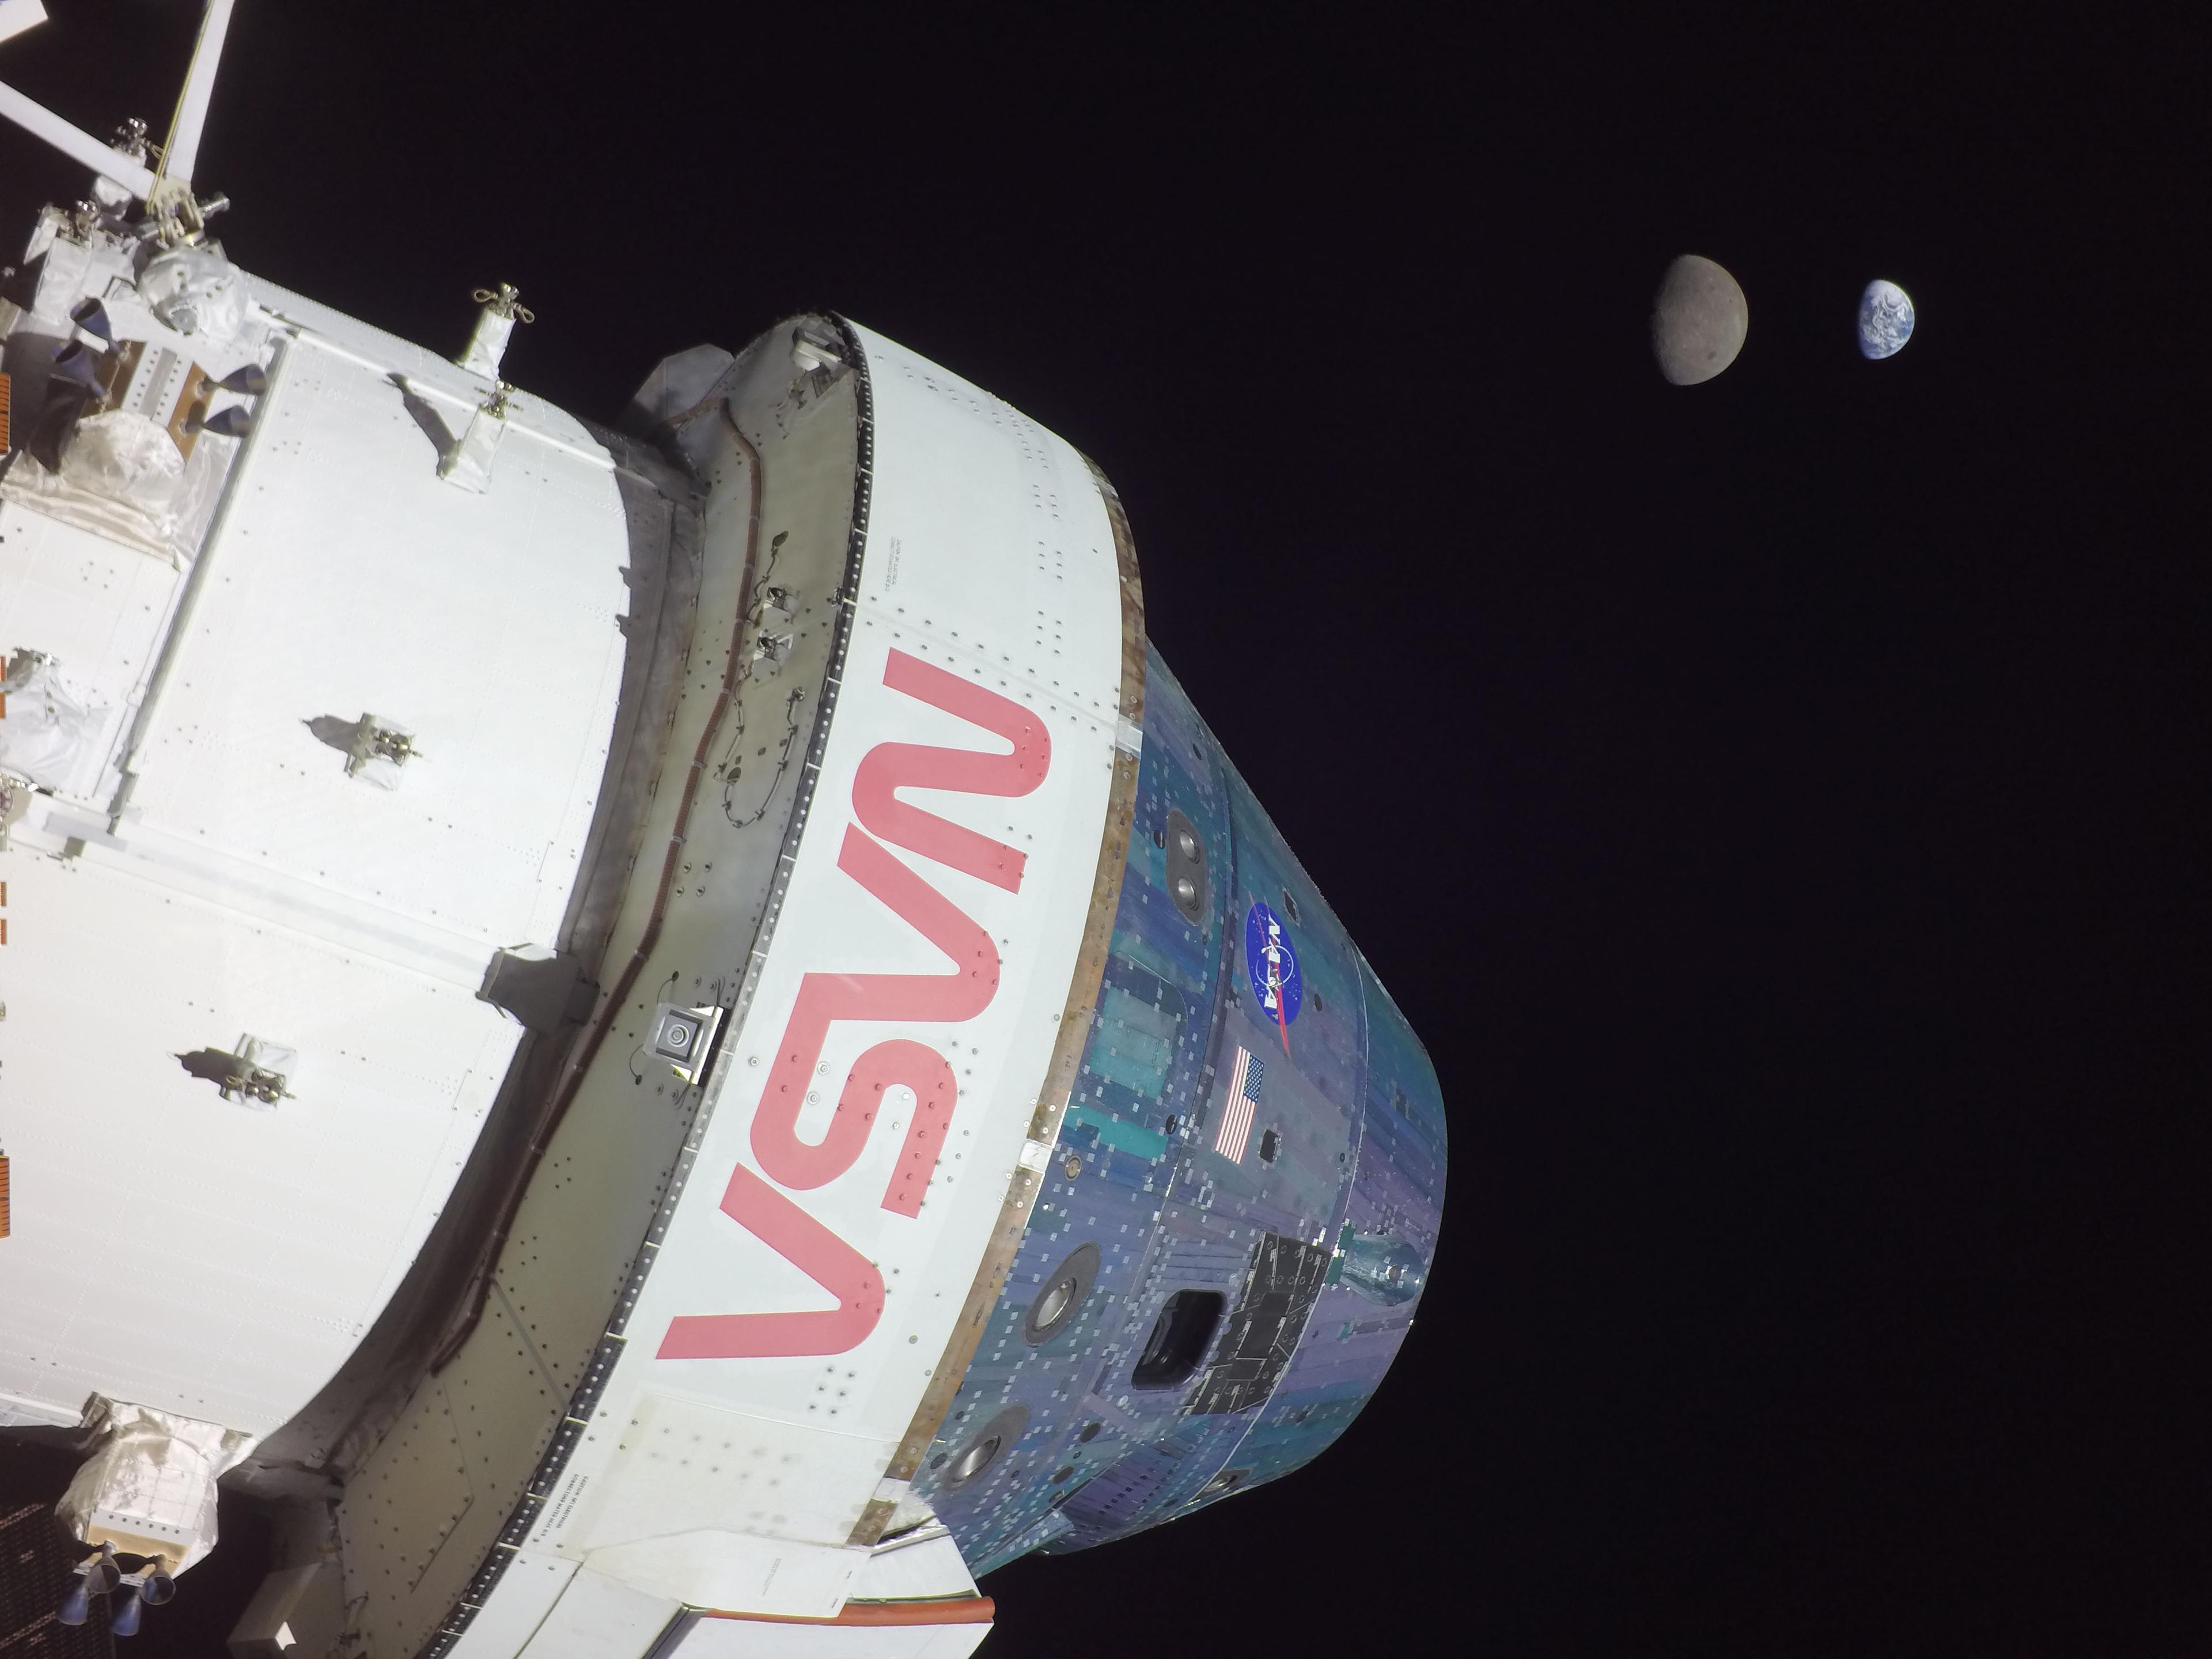 مركبة أورَيون تغطّي معظم الإطار بتفاصيل واضحة وعليها شعار ناسا، وفي البعيد يظهر القمر والأرض بطور الهلال الأحدب وبحجم ظاهري متقارب.